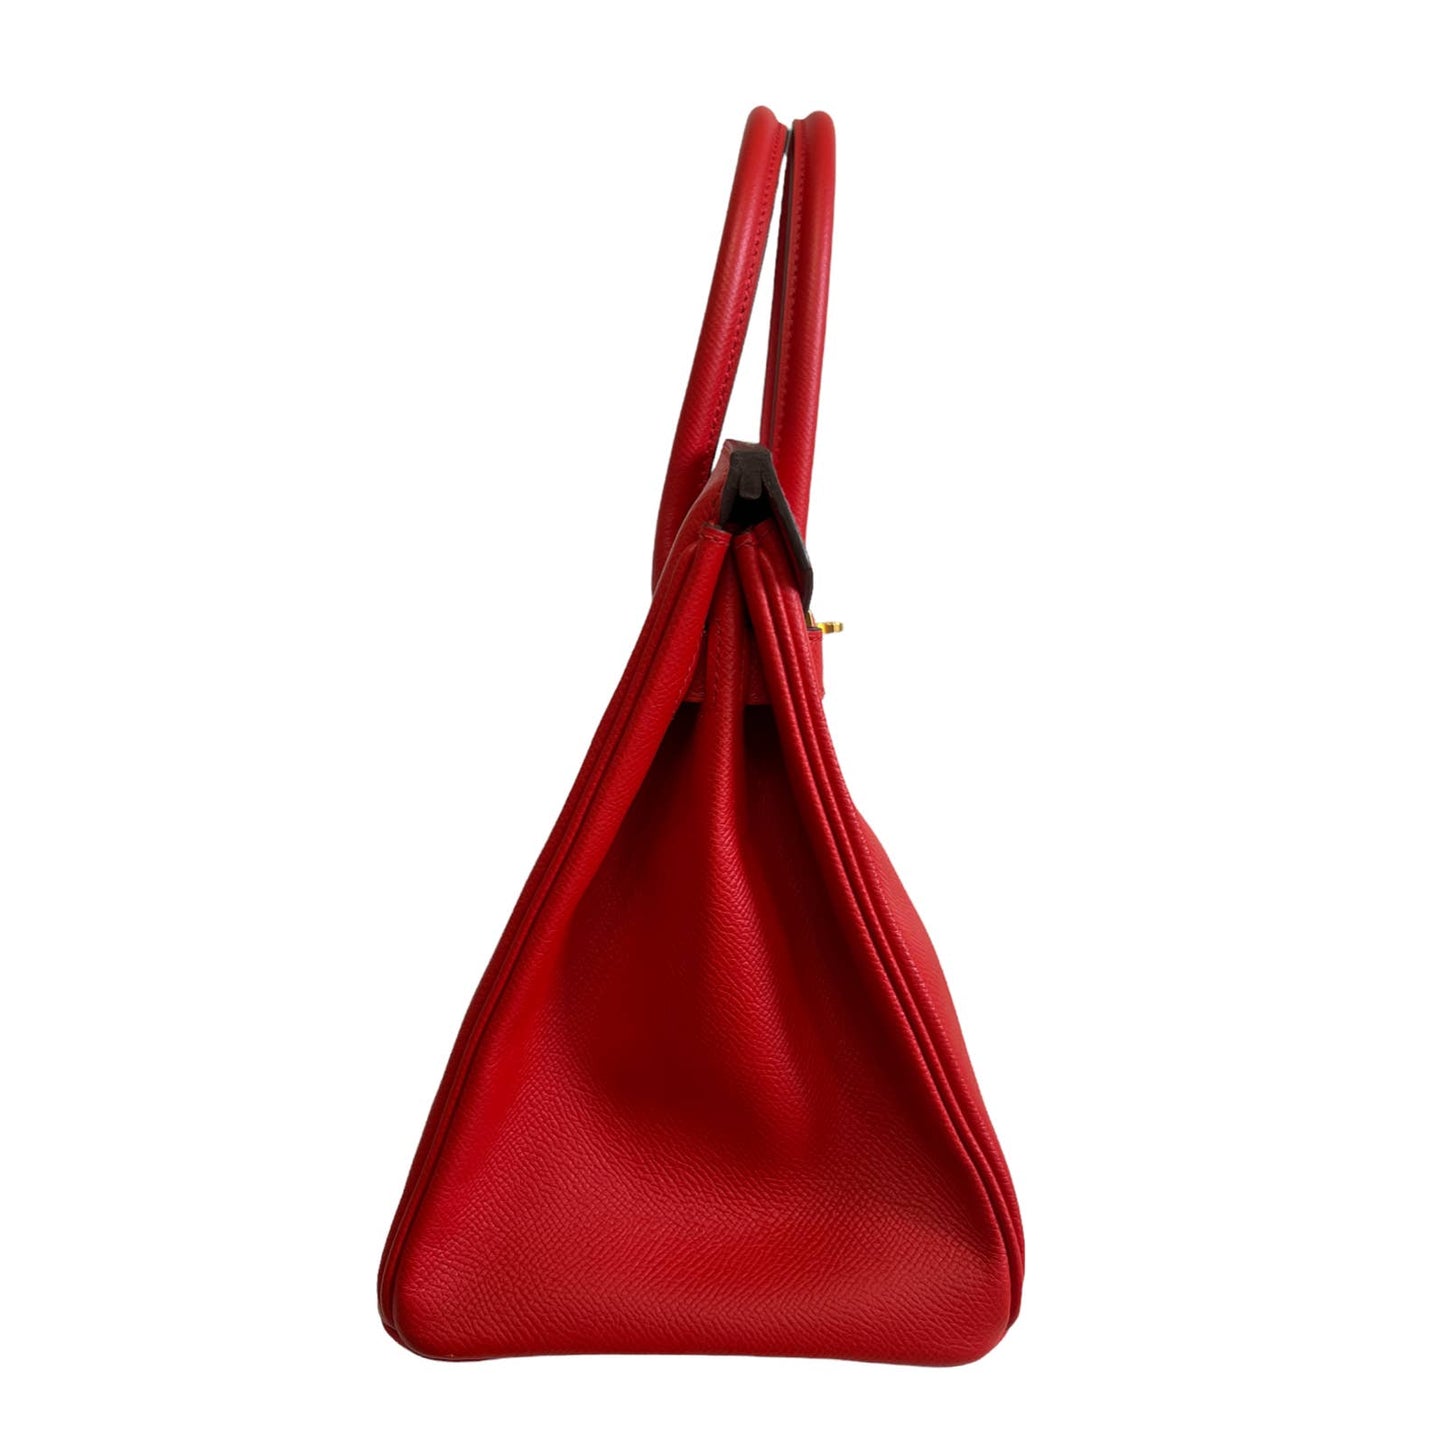 Hermes Birkin 30 Rouge de Coeur Red Epsom Leather Gold Hardware Bag Handbag 2019